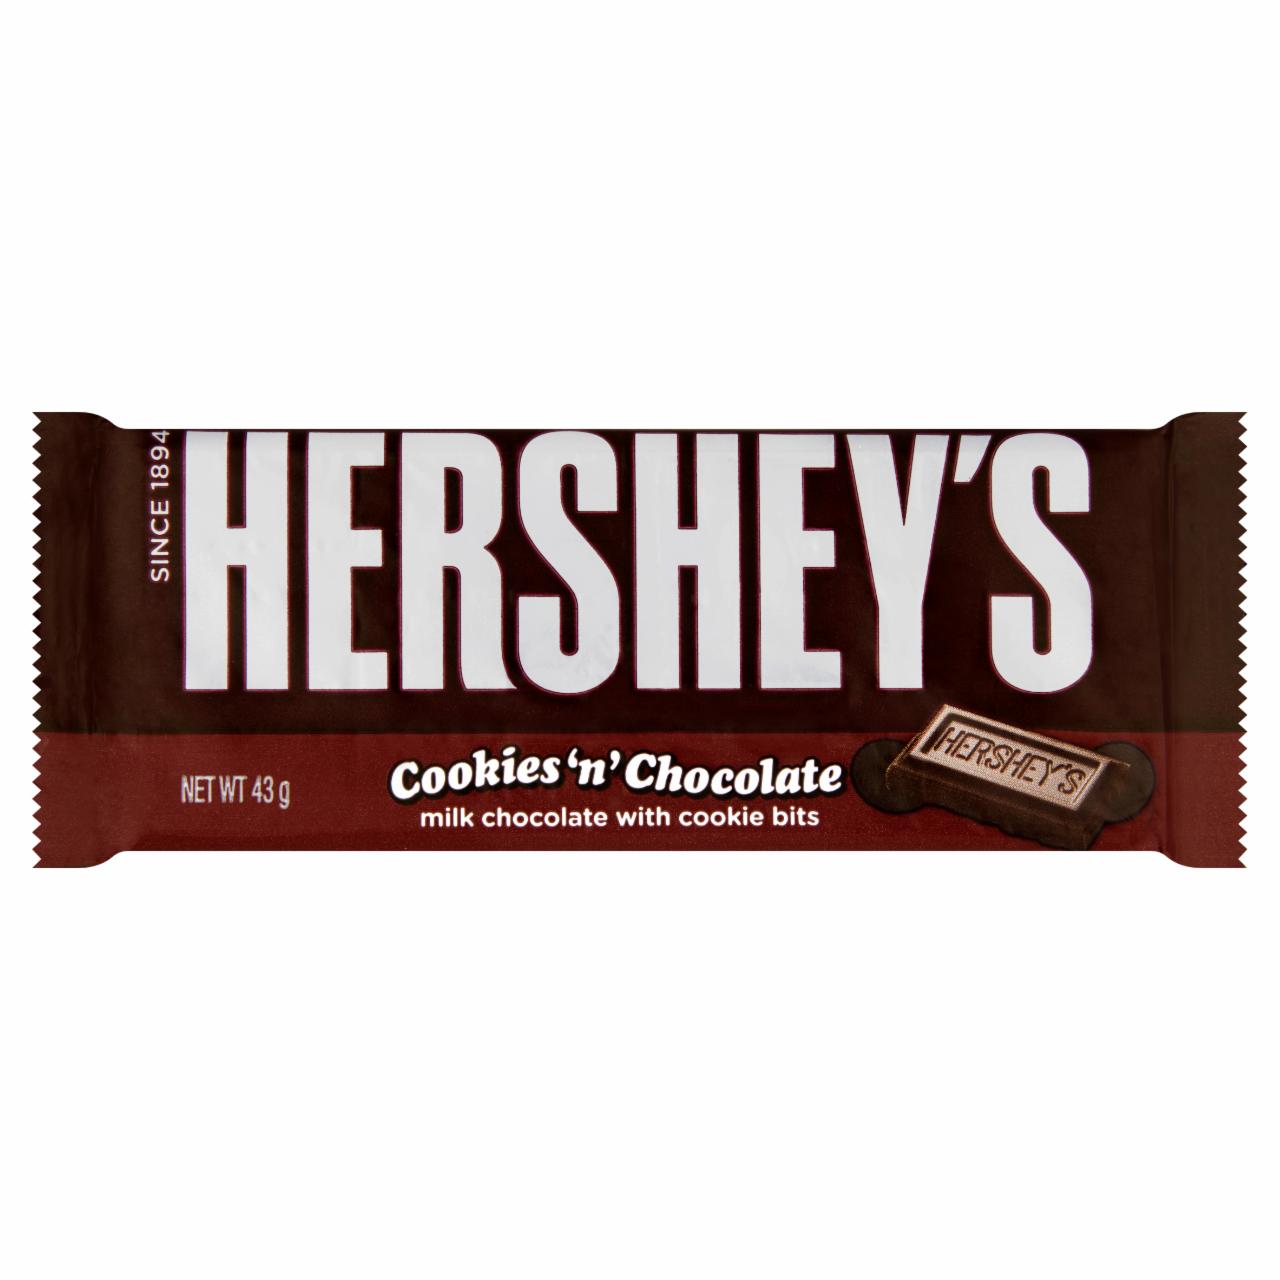 Képek - Hershey's tejcsokoládé szelet csokis keksz darabokkal 43 g